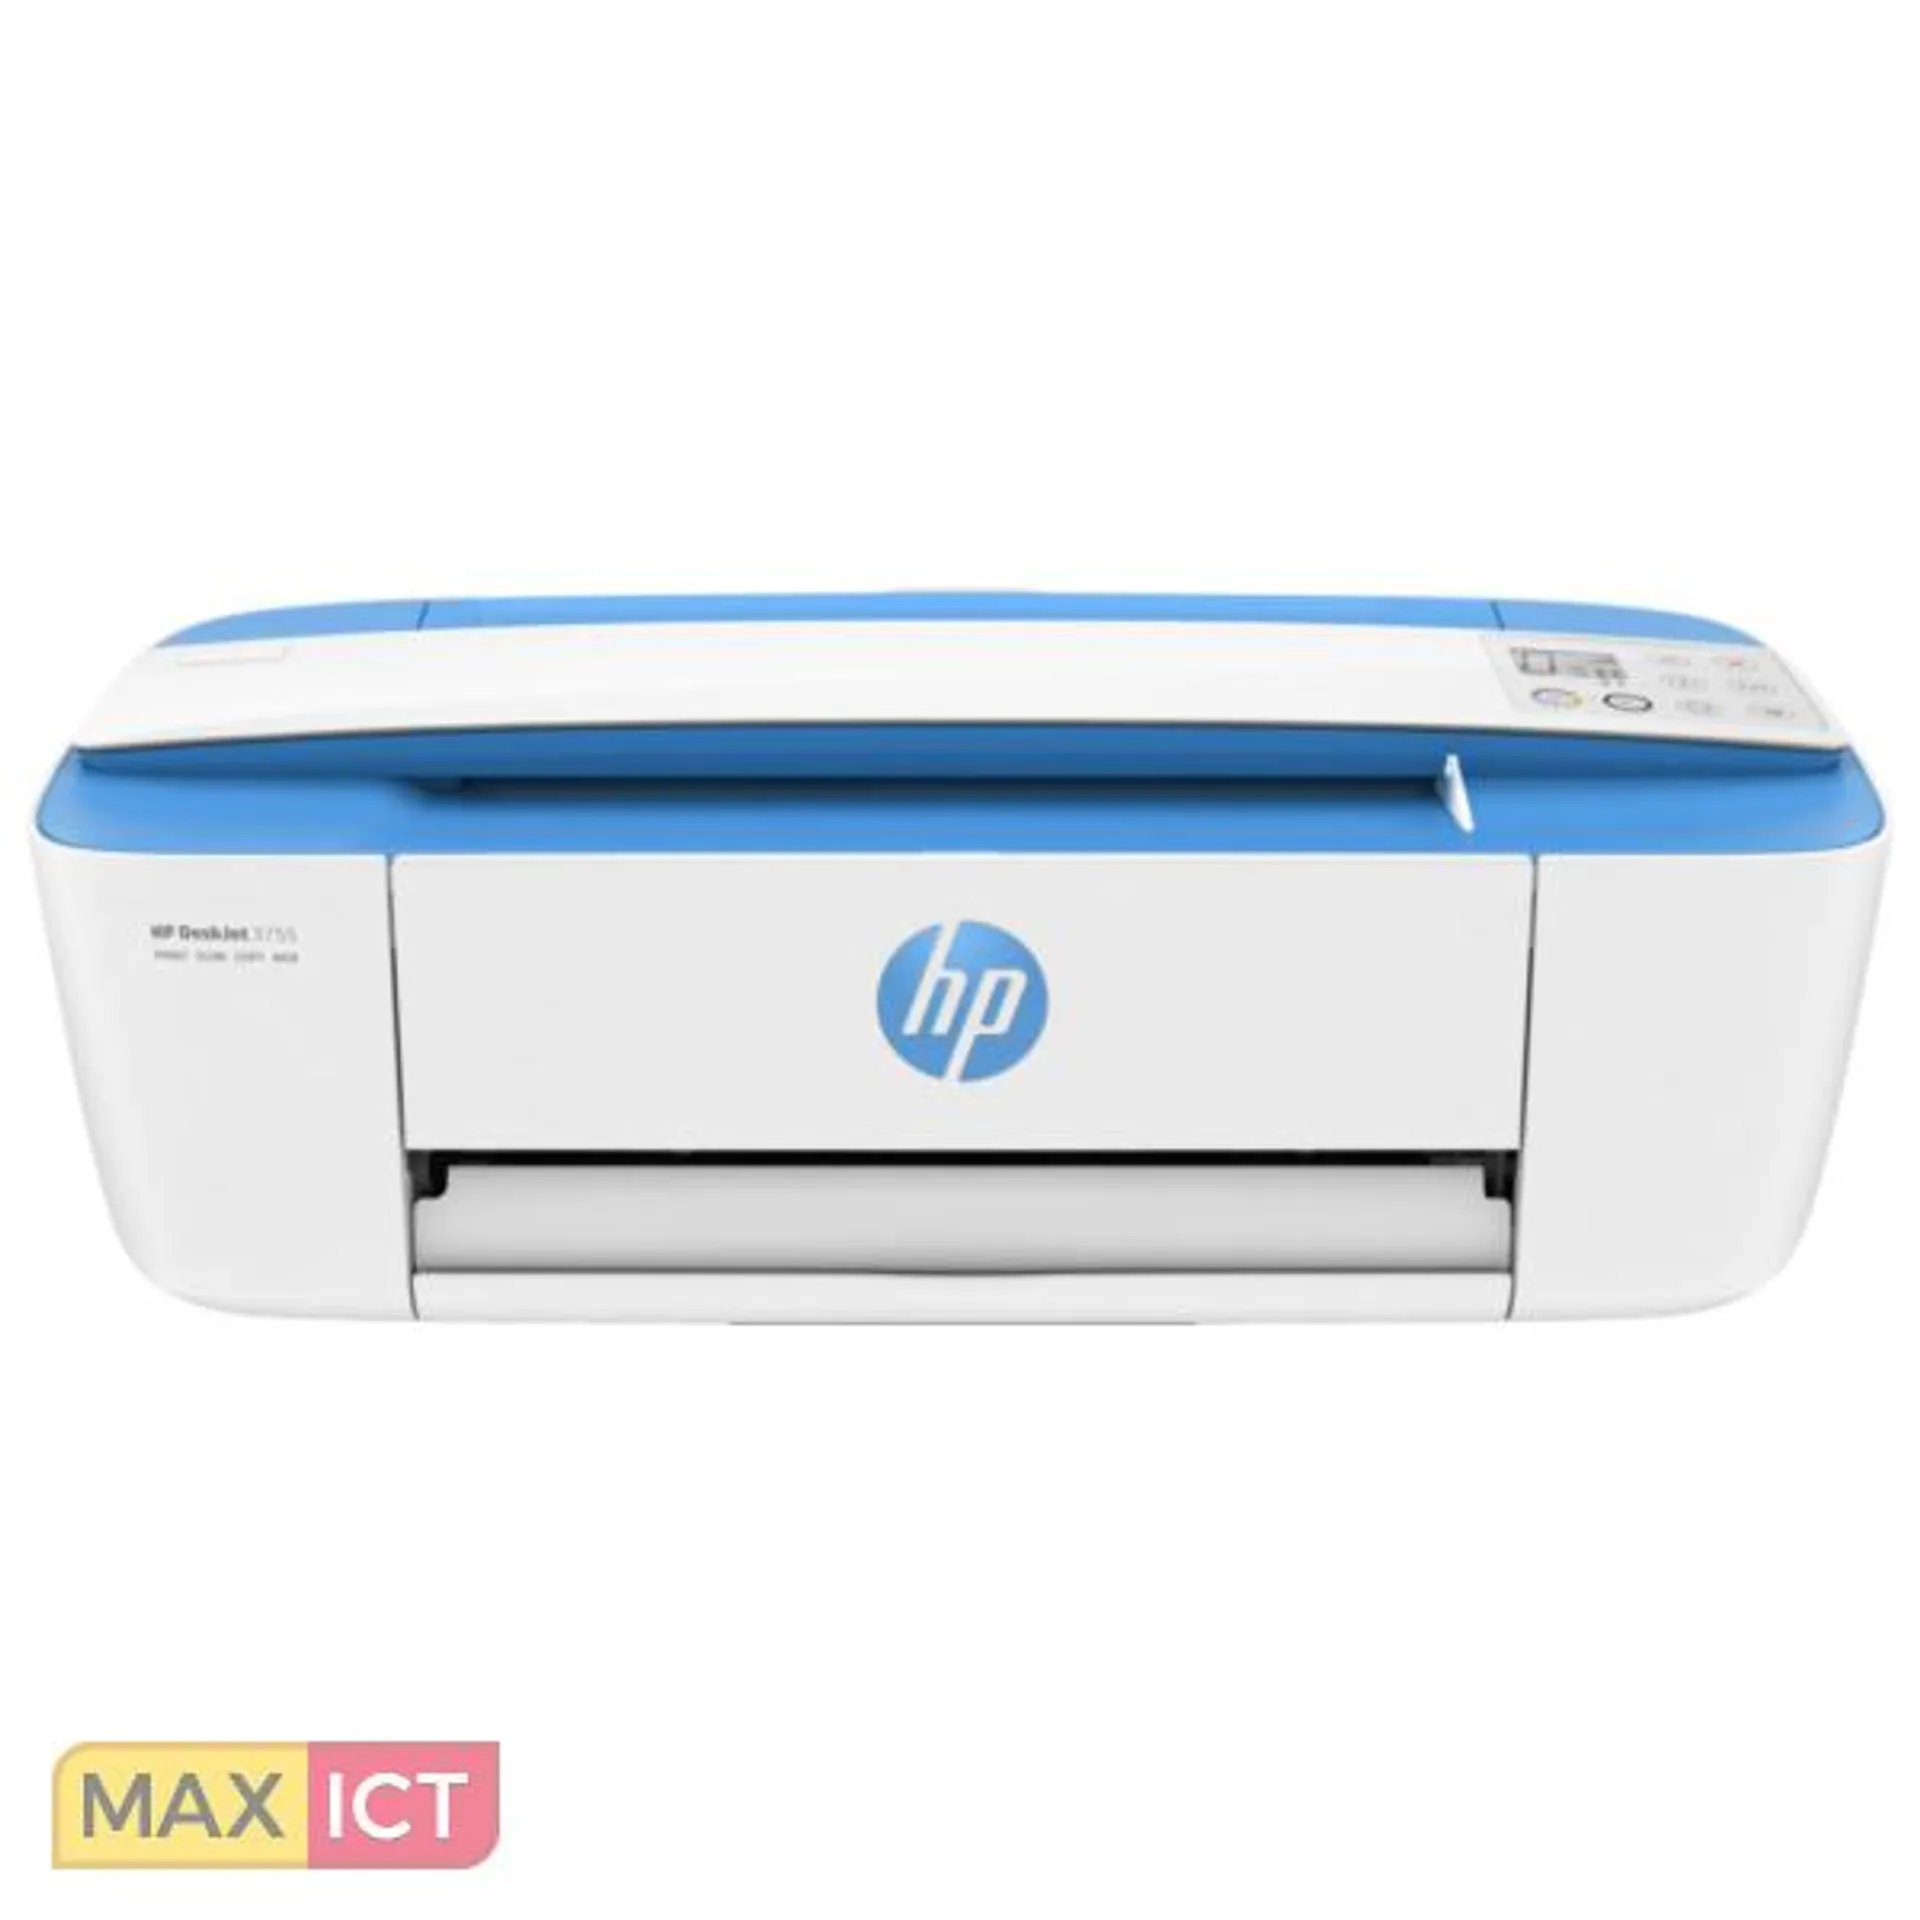 HP DeskJet 3750 All-in-One printer, Home, Afdrukken, kopiëren, scannen, draadloos, Scans naar e-mail/pdf; Dubbelzijdig printen